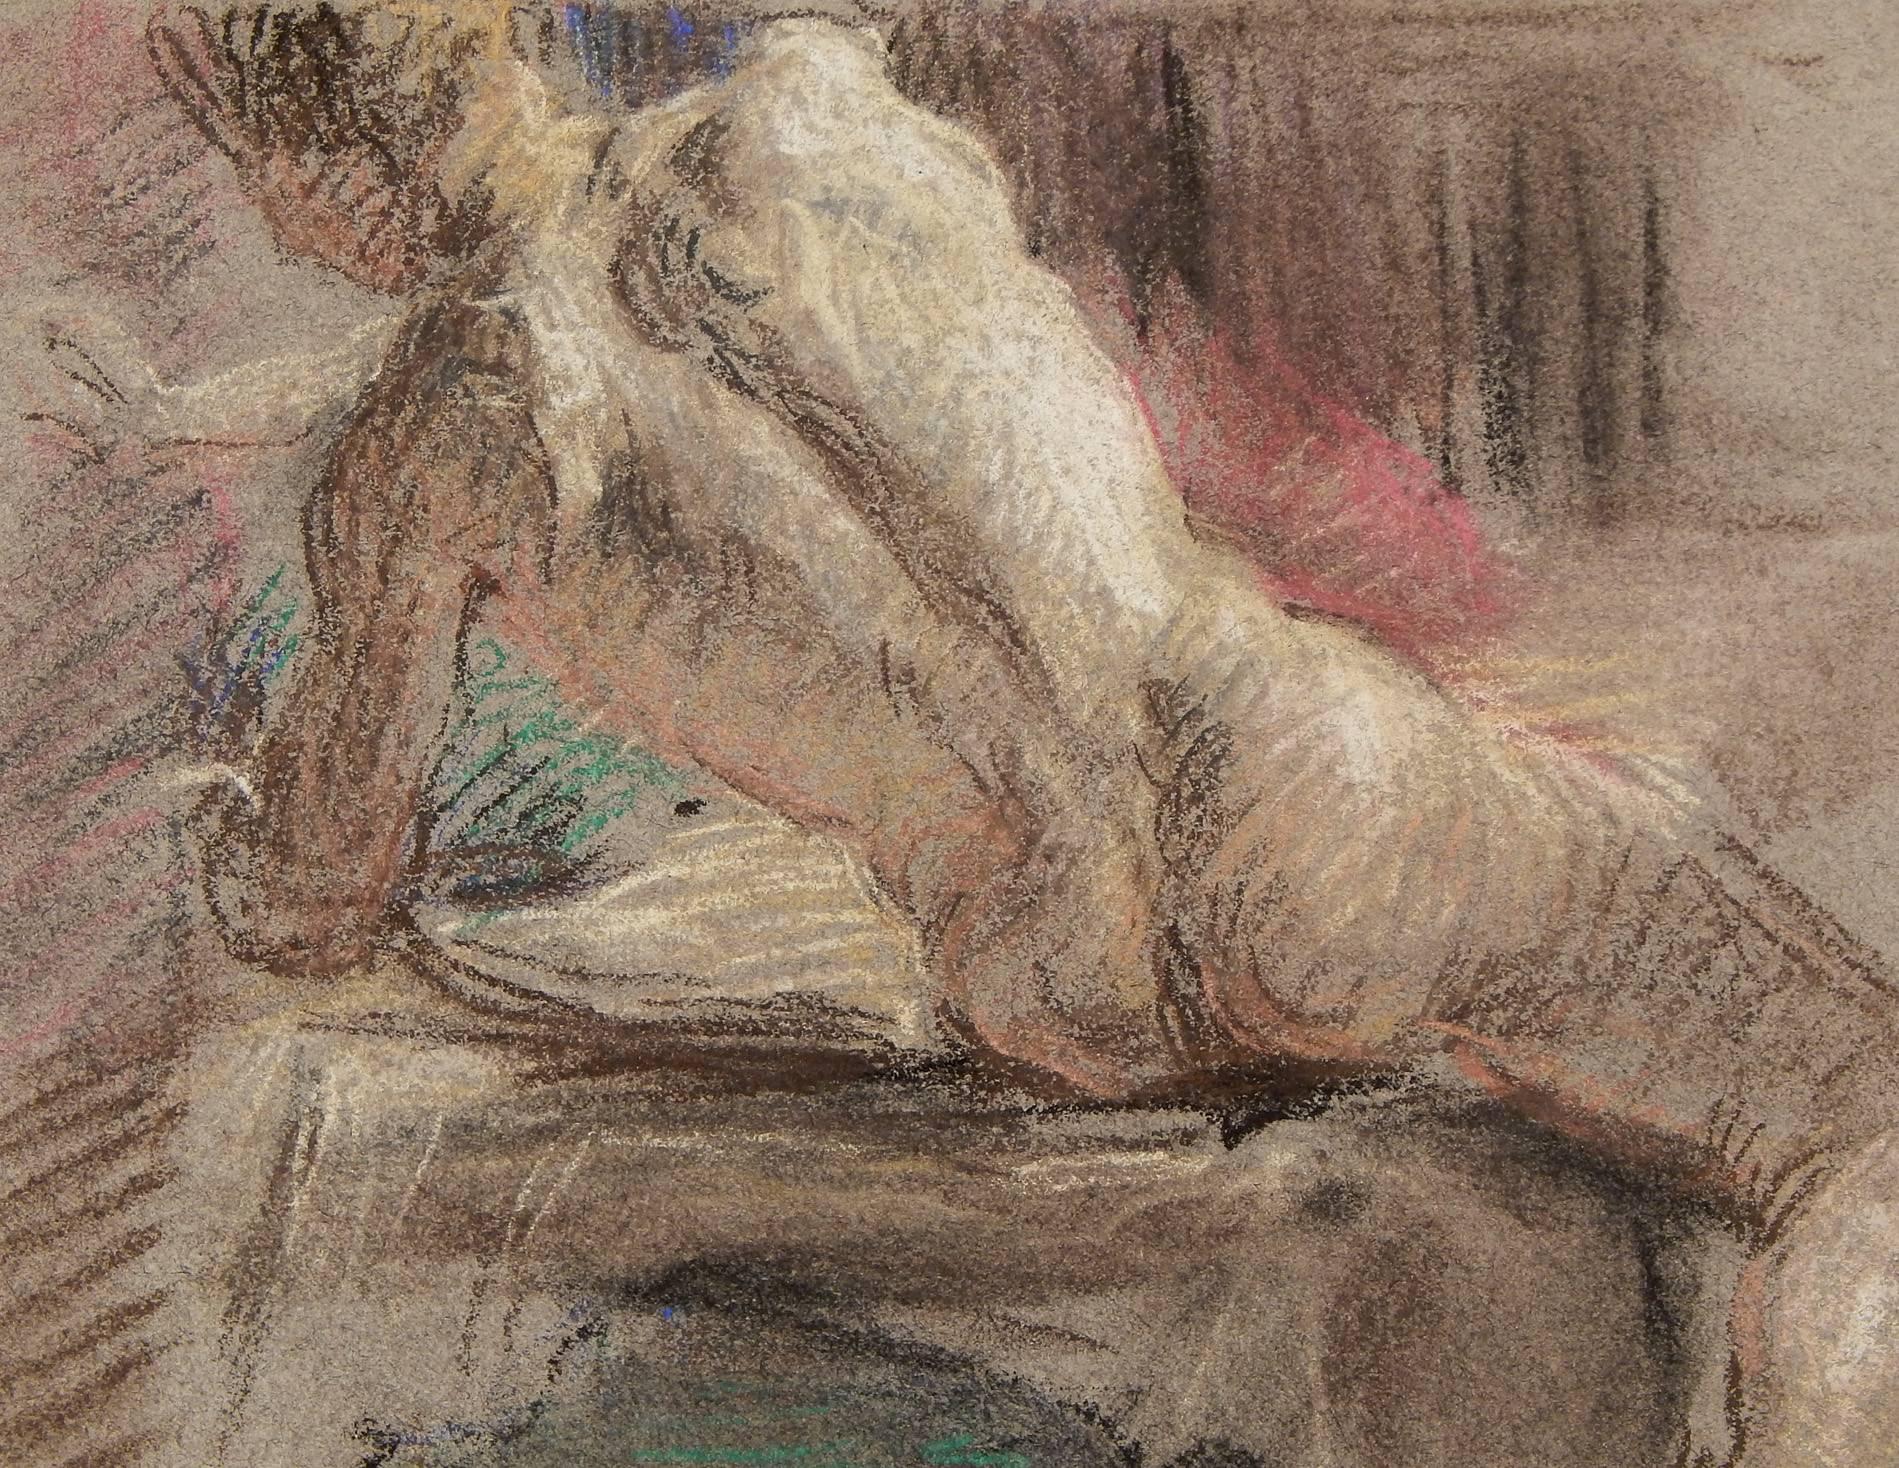 Diese hübsche, in Pastell ausgeführte Zeichnung eines sitzenden männlichen Aktes beweist Allyn Cox' hervorragende Zeichenkunst und Farbbeherrschung. Die Darstellung seines Motivs von hinten, wenn er sich nach links lehnt, erinnert an die Werke der